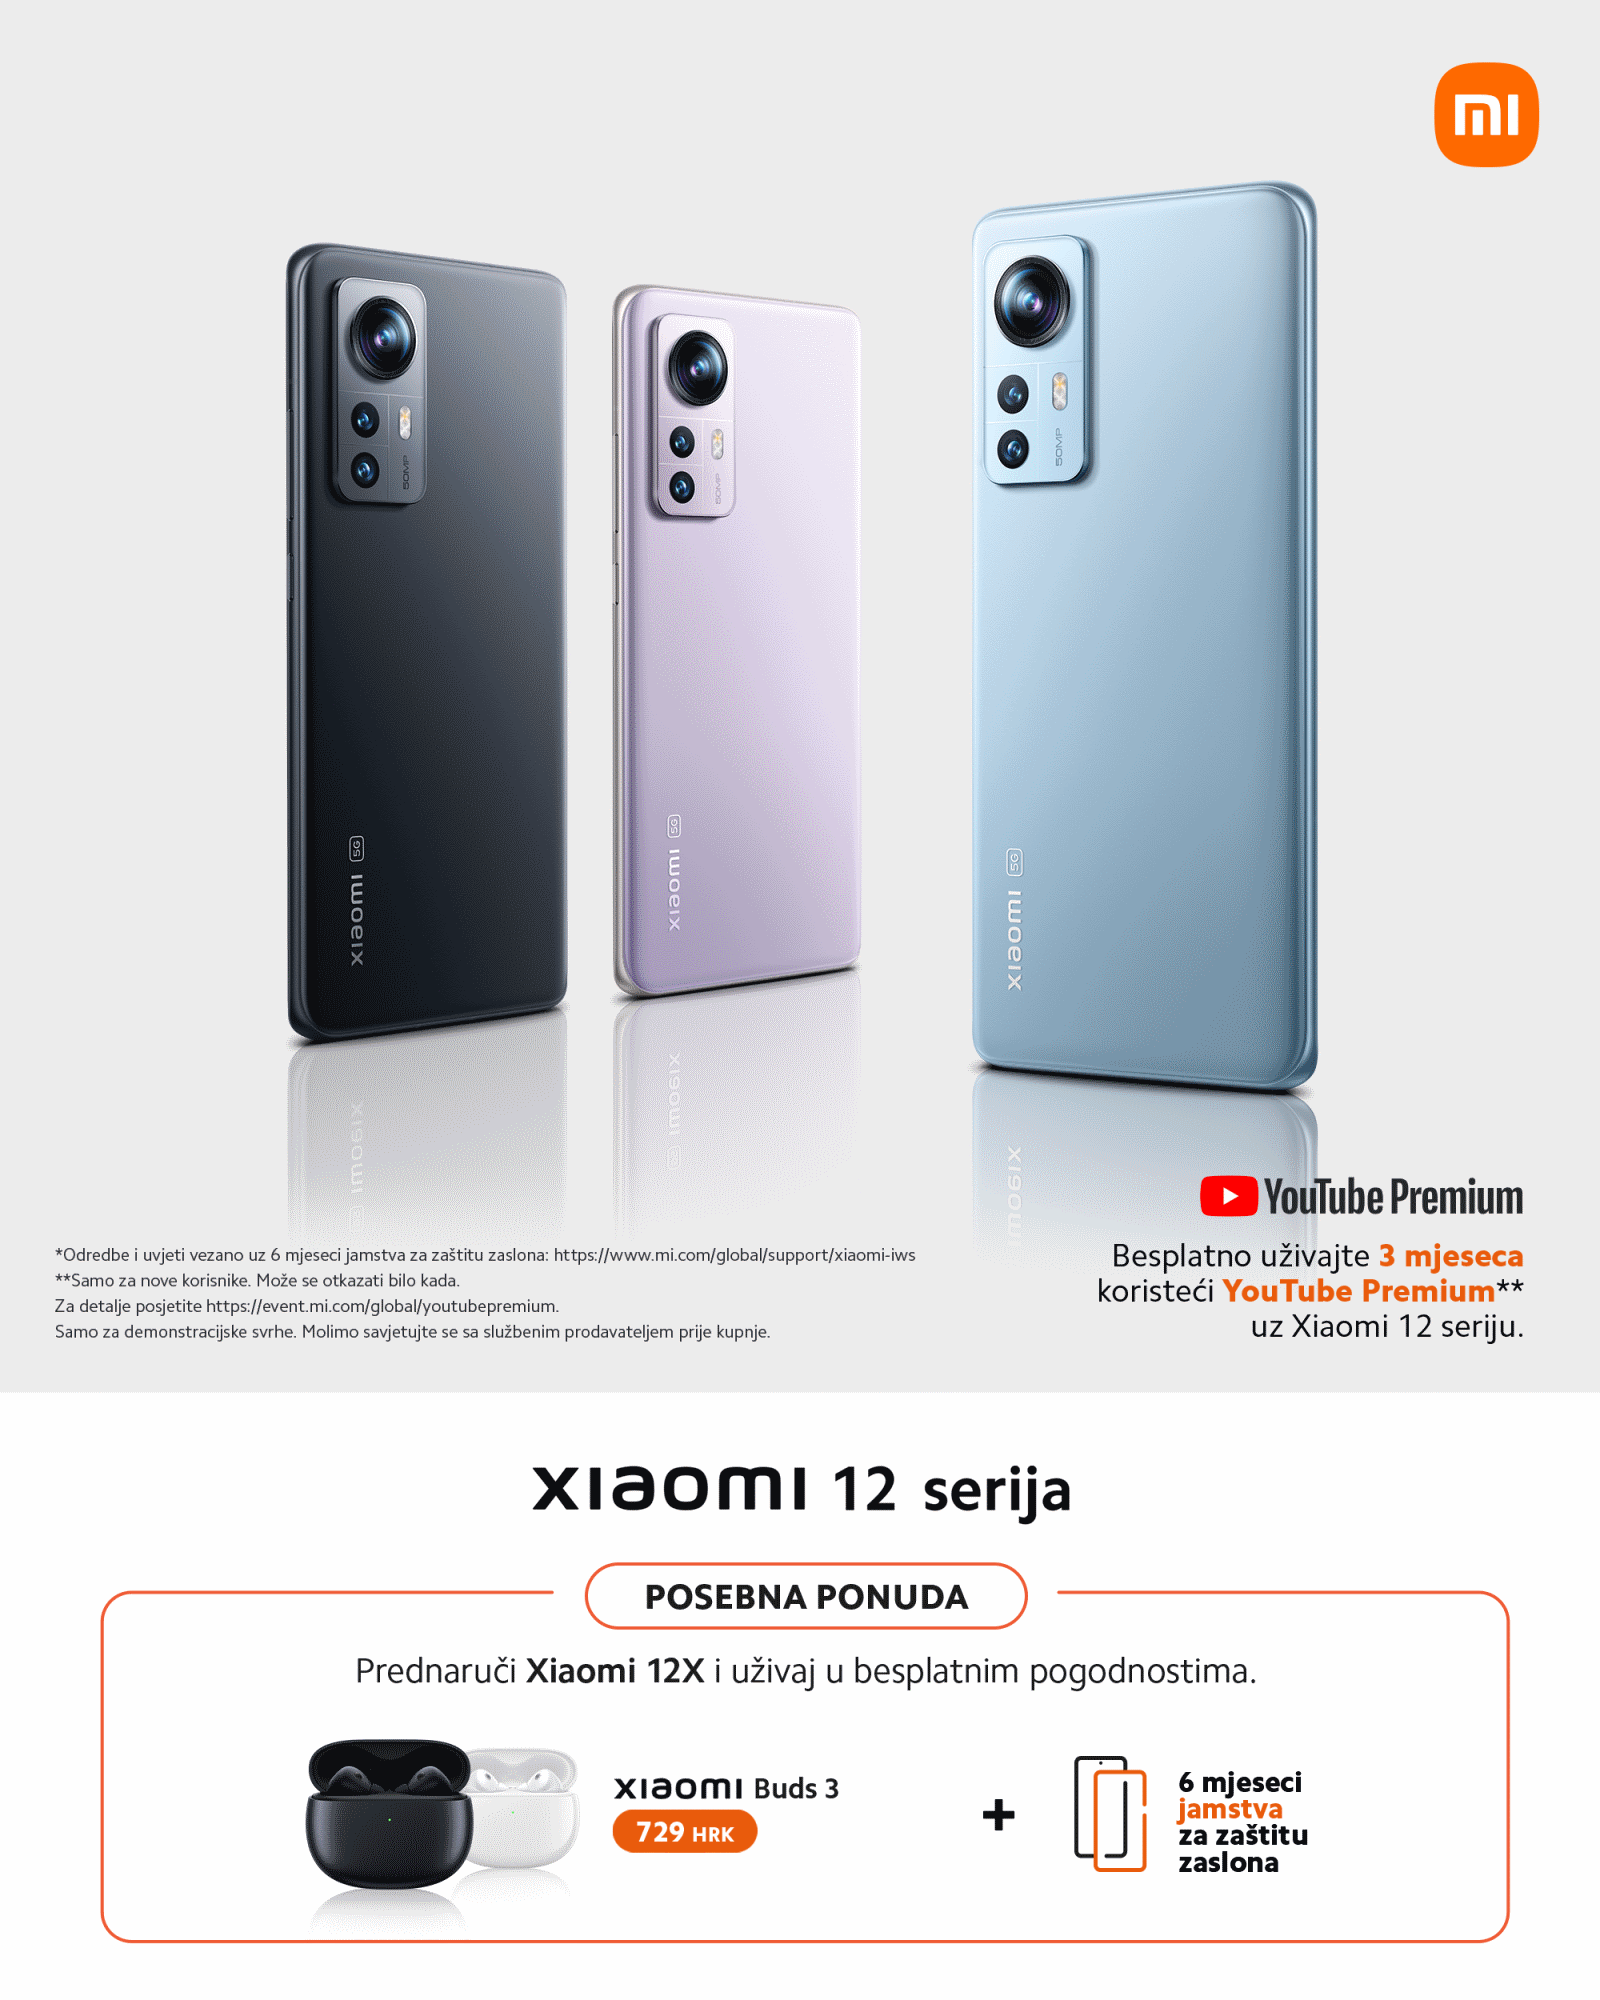 Nova Xiaomi 12 serija ostavlja bez daha: Moćan dizajn, studijska kamera i puna baterija za svega 18 minuta ono je što nam treba!